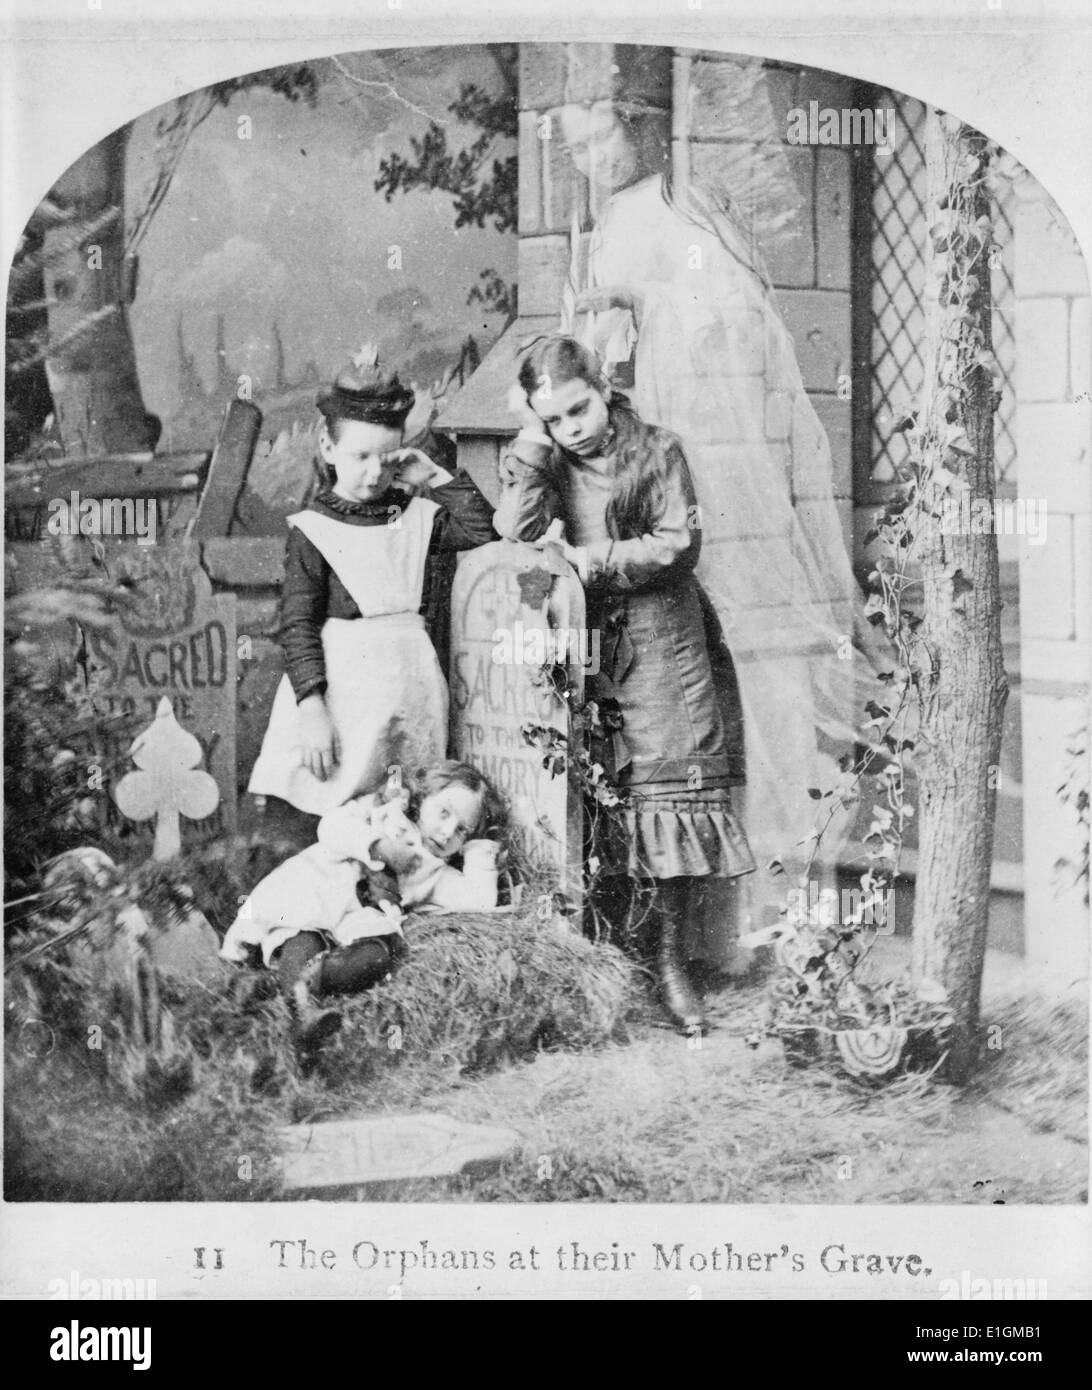 Impression photographique de trois orphelins et le fantôme de leur mère à sa tombe. Datée 1889 Banque D'Images